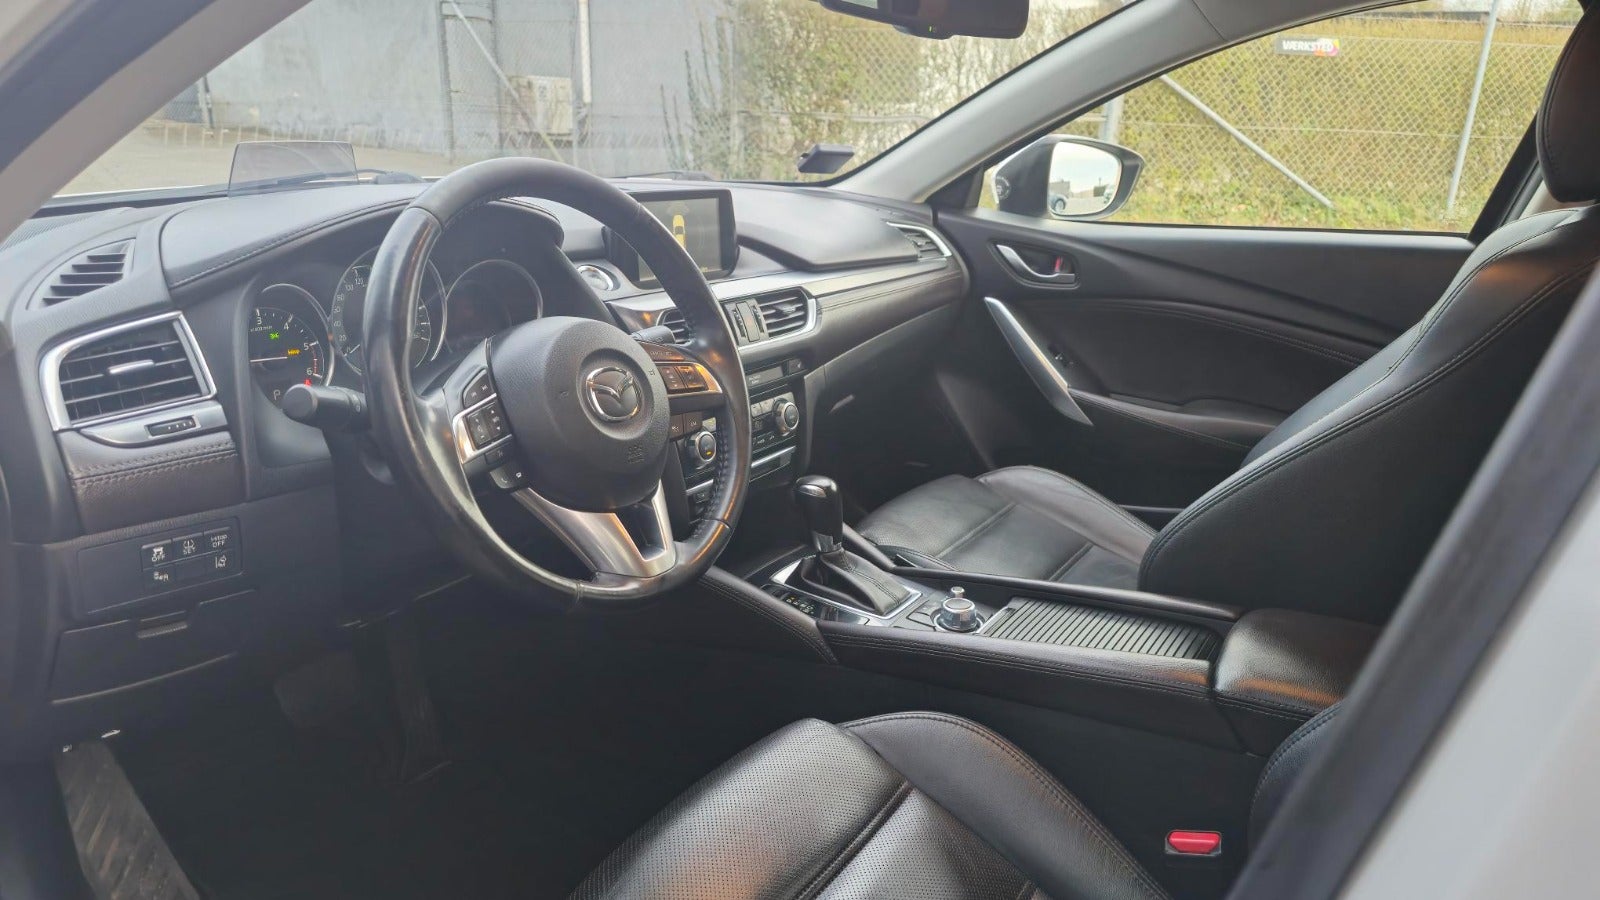 Mazda 6 2016